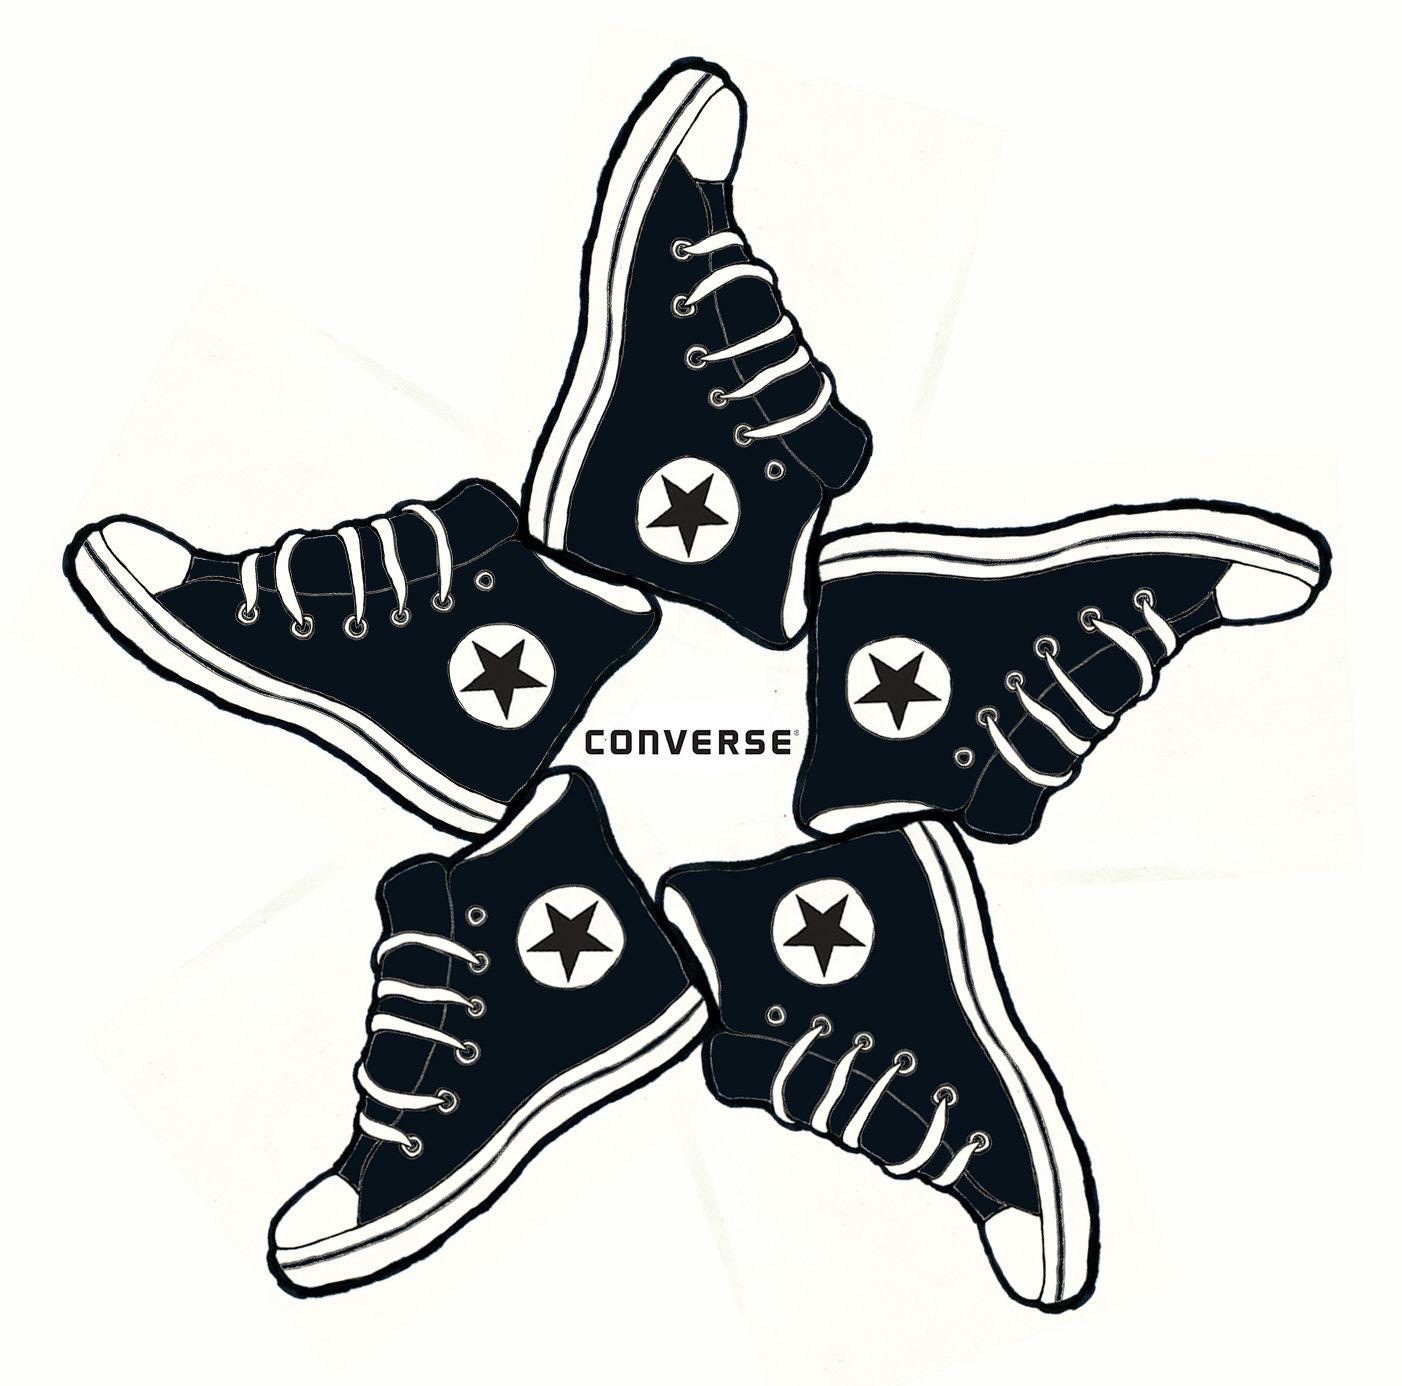 Converse All-Star Logo - Converse all star Logos